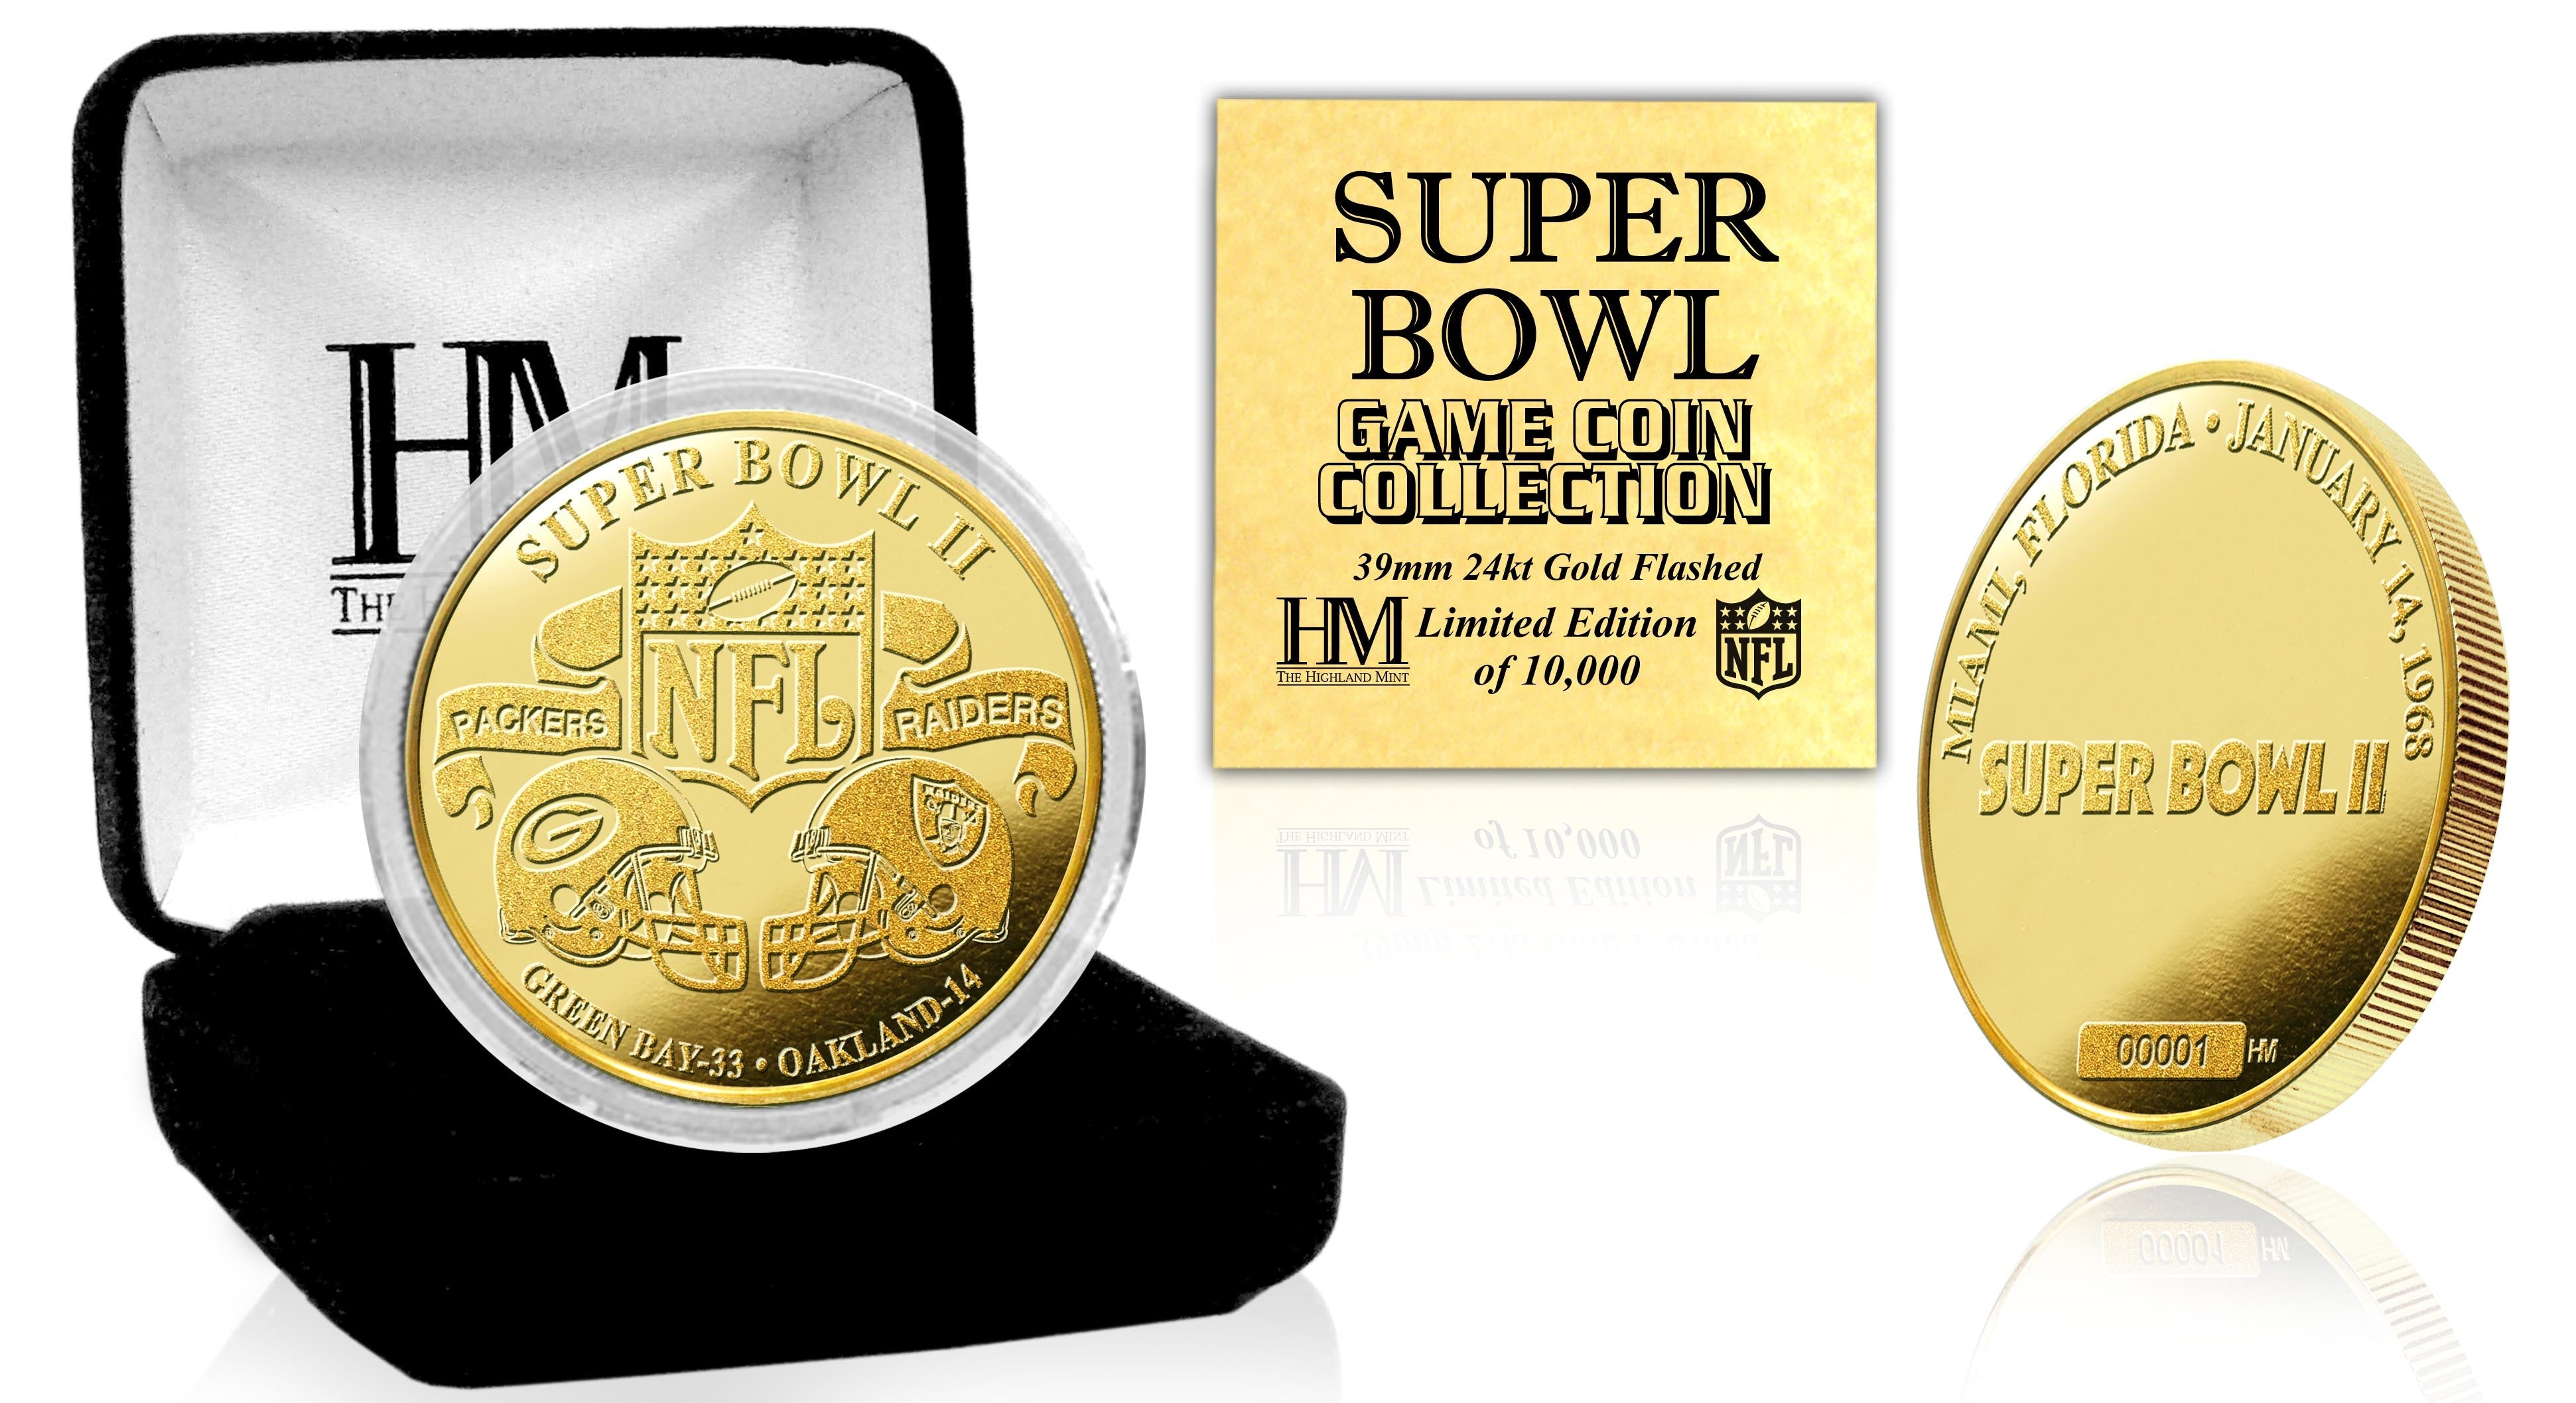 Super Bowl II 24kt Gold Flip Coin